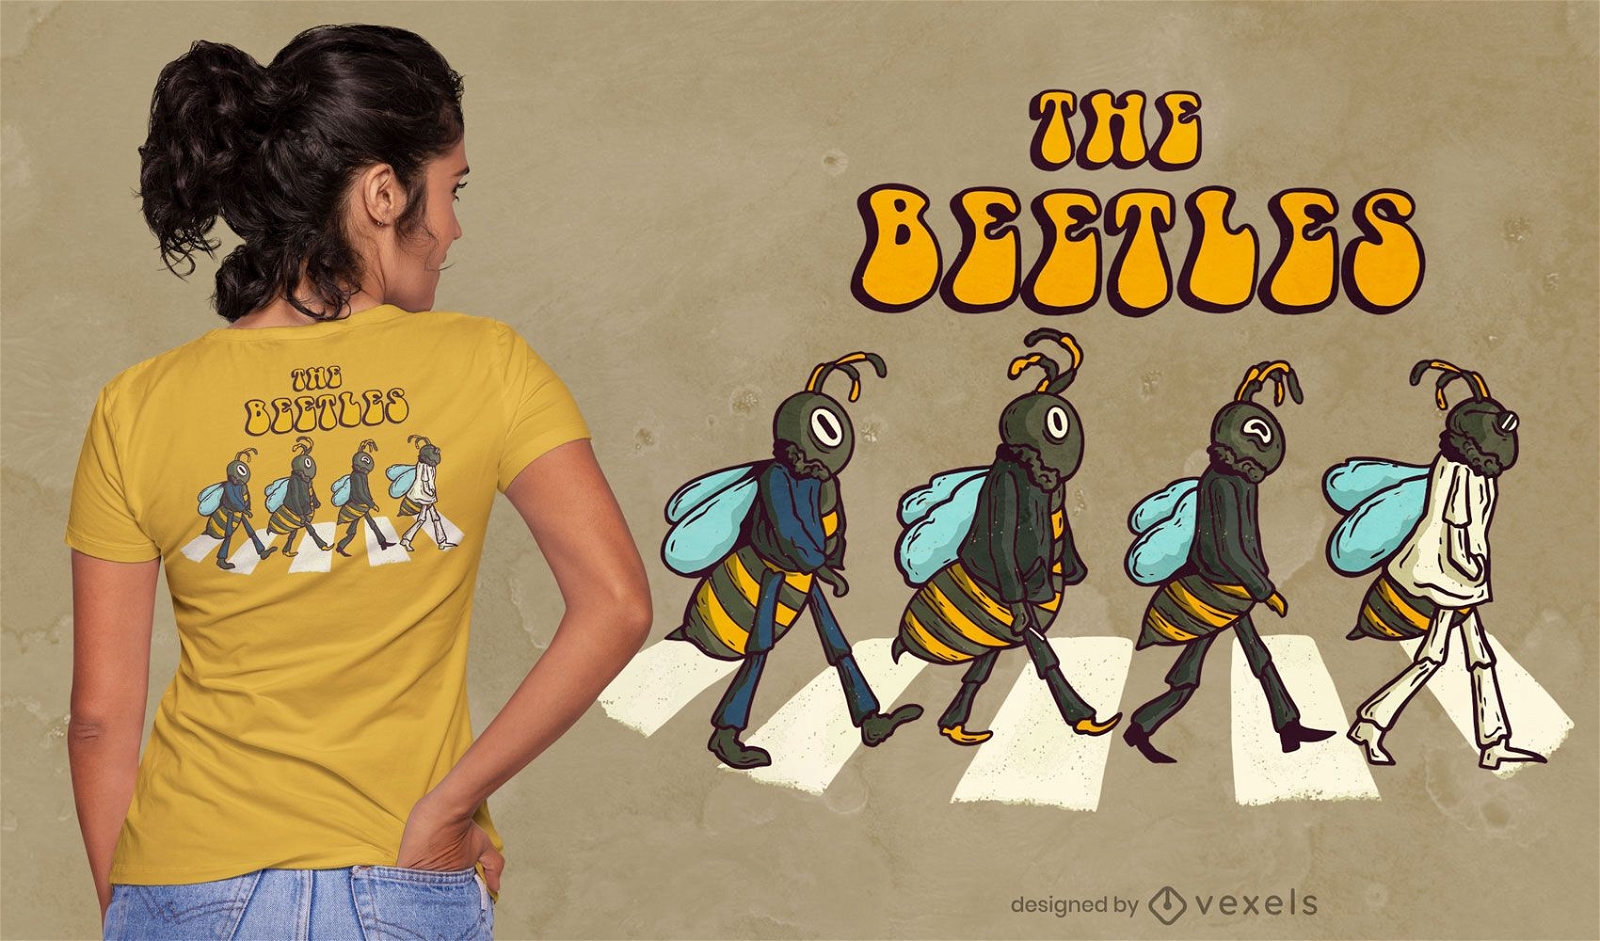 O design da camiseta da paródia dos besouros